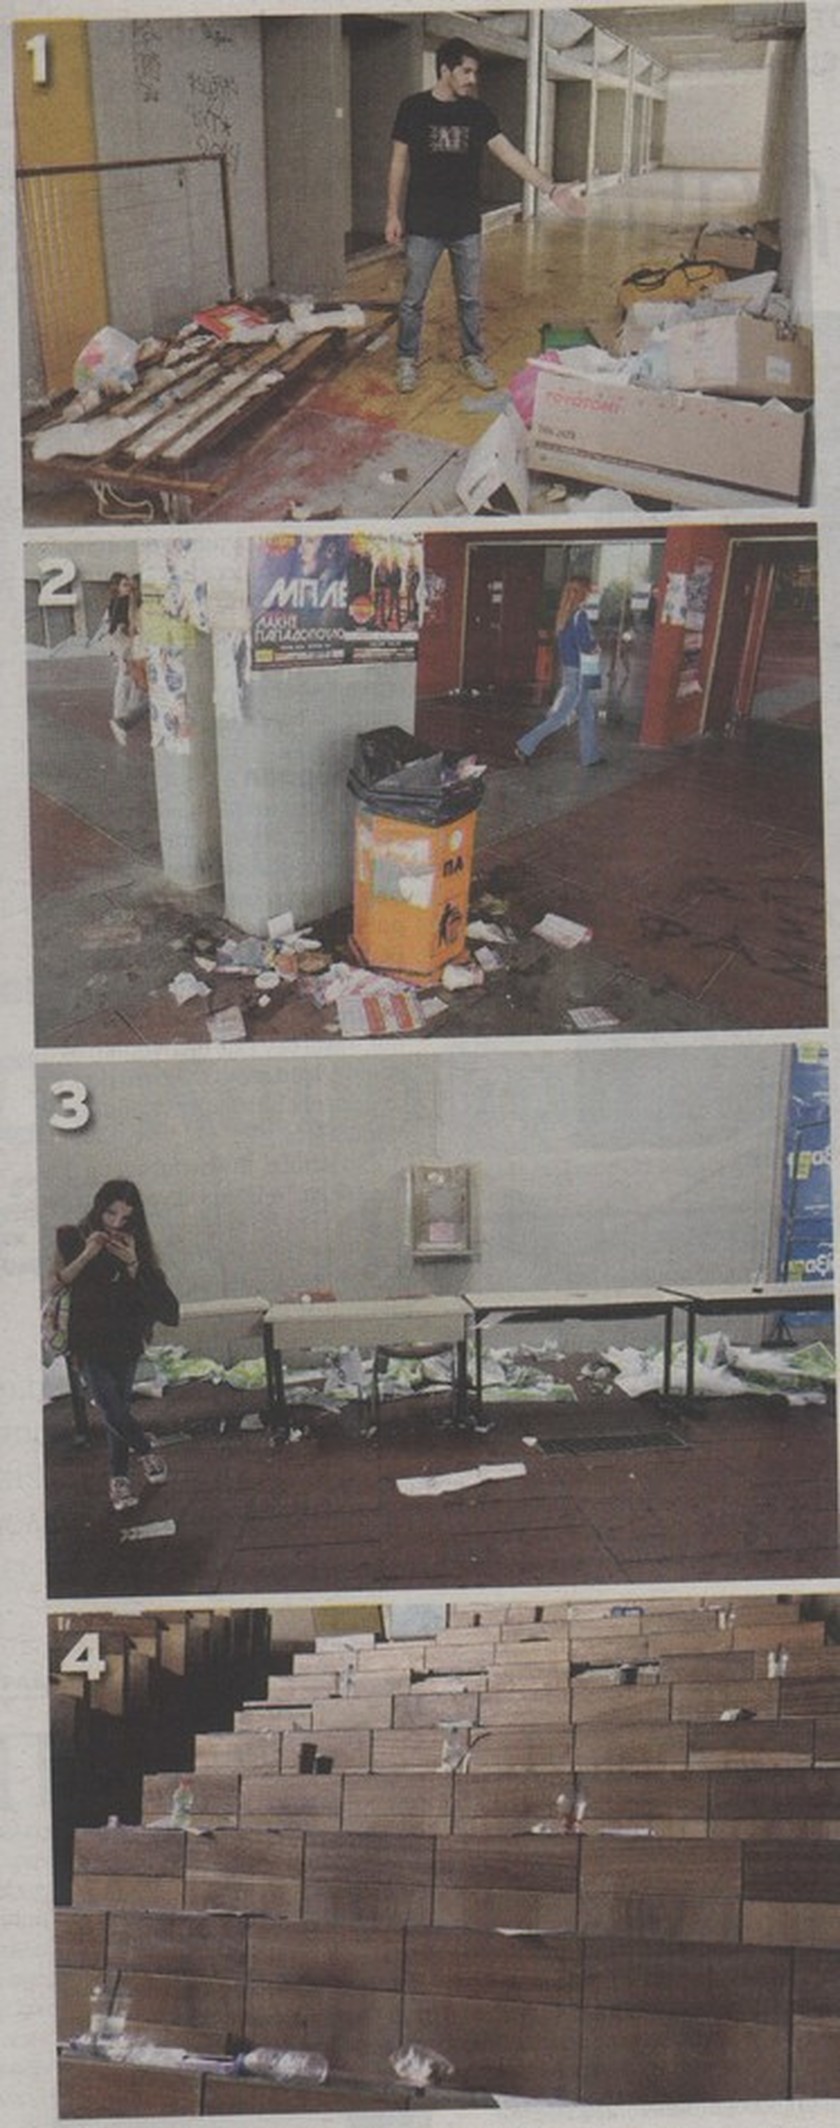 Φιλοσοφική Αθηνών: Εικόνες καταστροφής στο ΕΚΠΑ – Σκουπίδια παντού (pics)